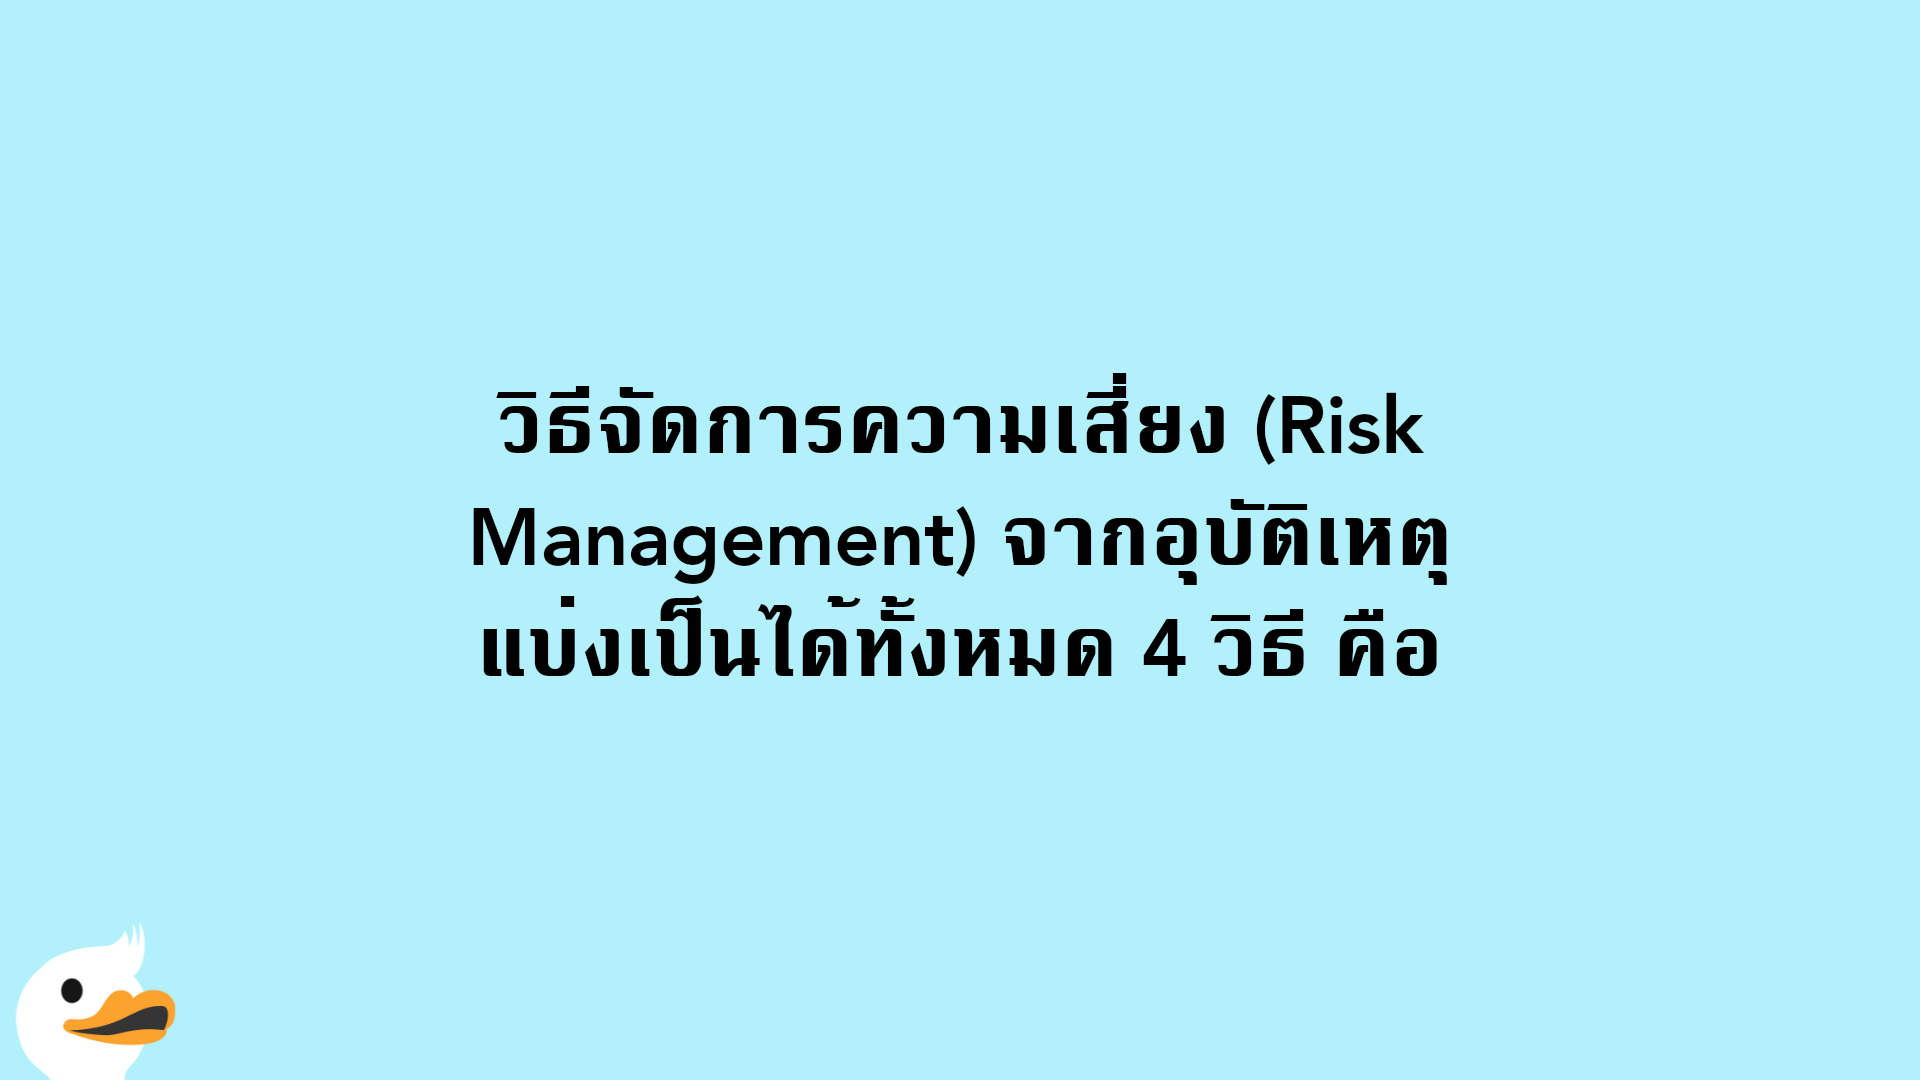 วิธีจัดการความเสี่ยง (Risk Management) จากอุบัติเหตุ แบ่งเป็นได้ทั้งหมด 4 วิธี คือ